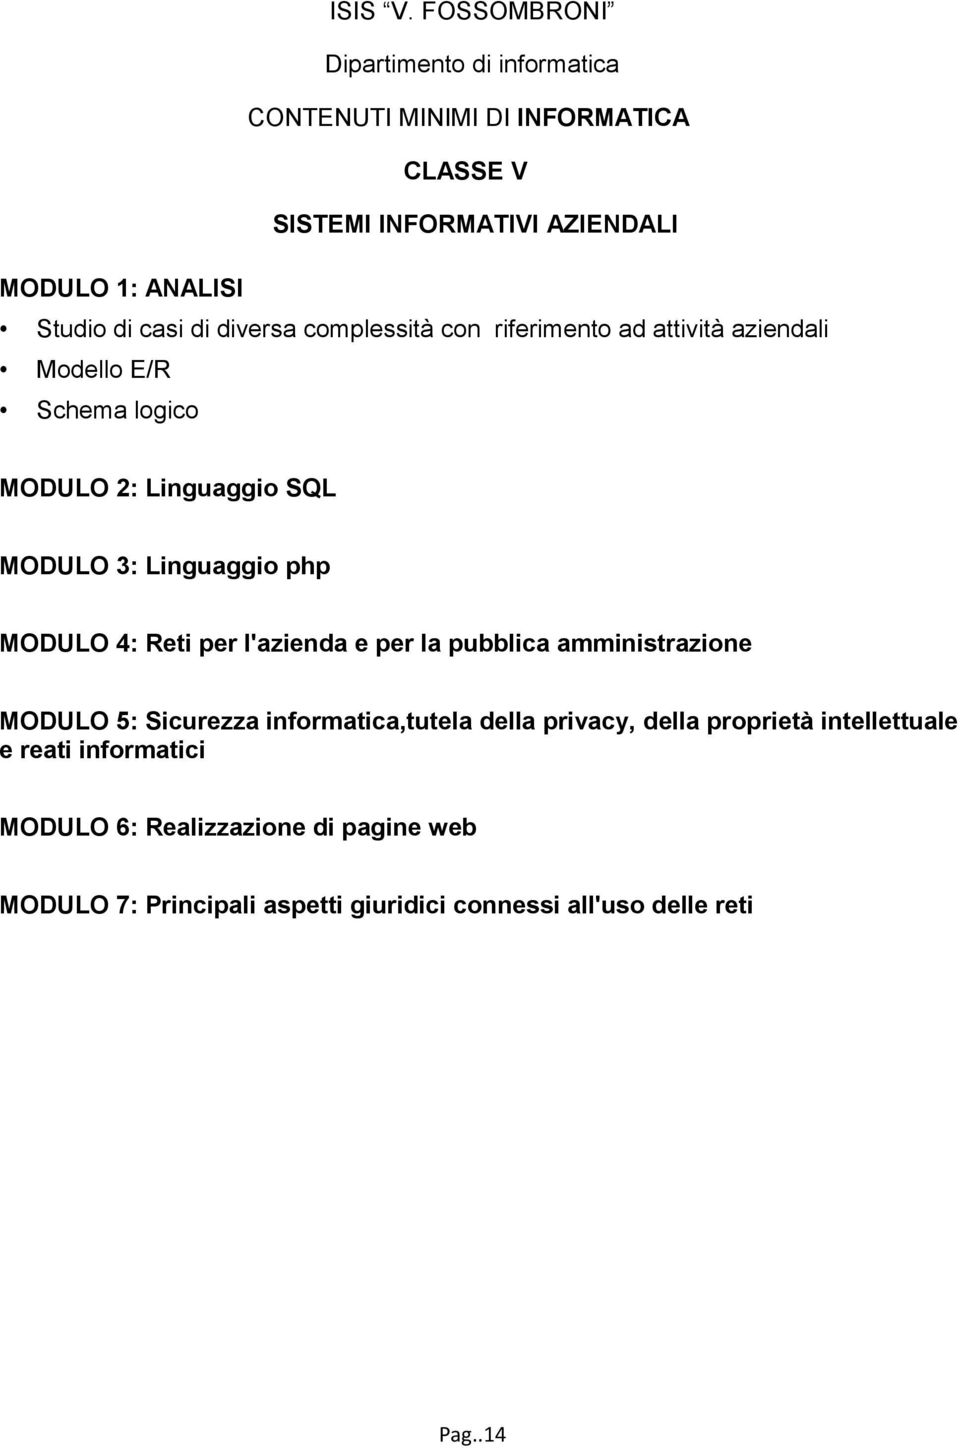 l'azienda e per la pubblica amministrazione MODULO 5: Sicurezza informatica,tutela della privacy, della proprietà